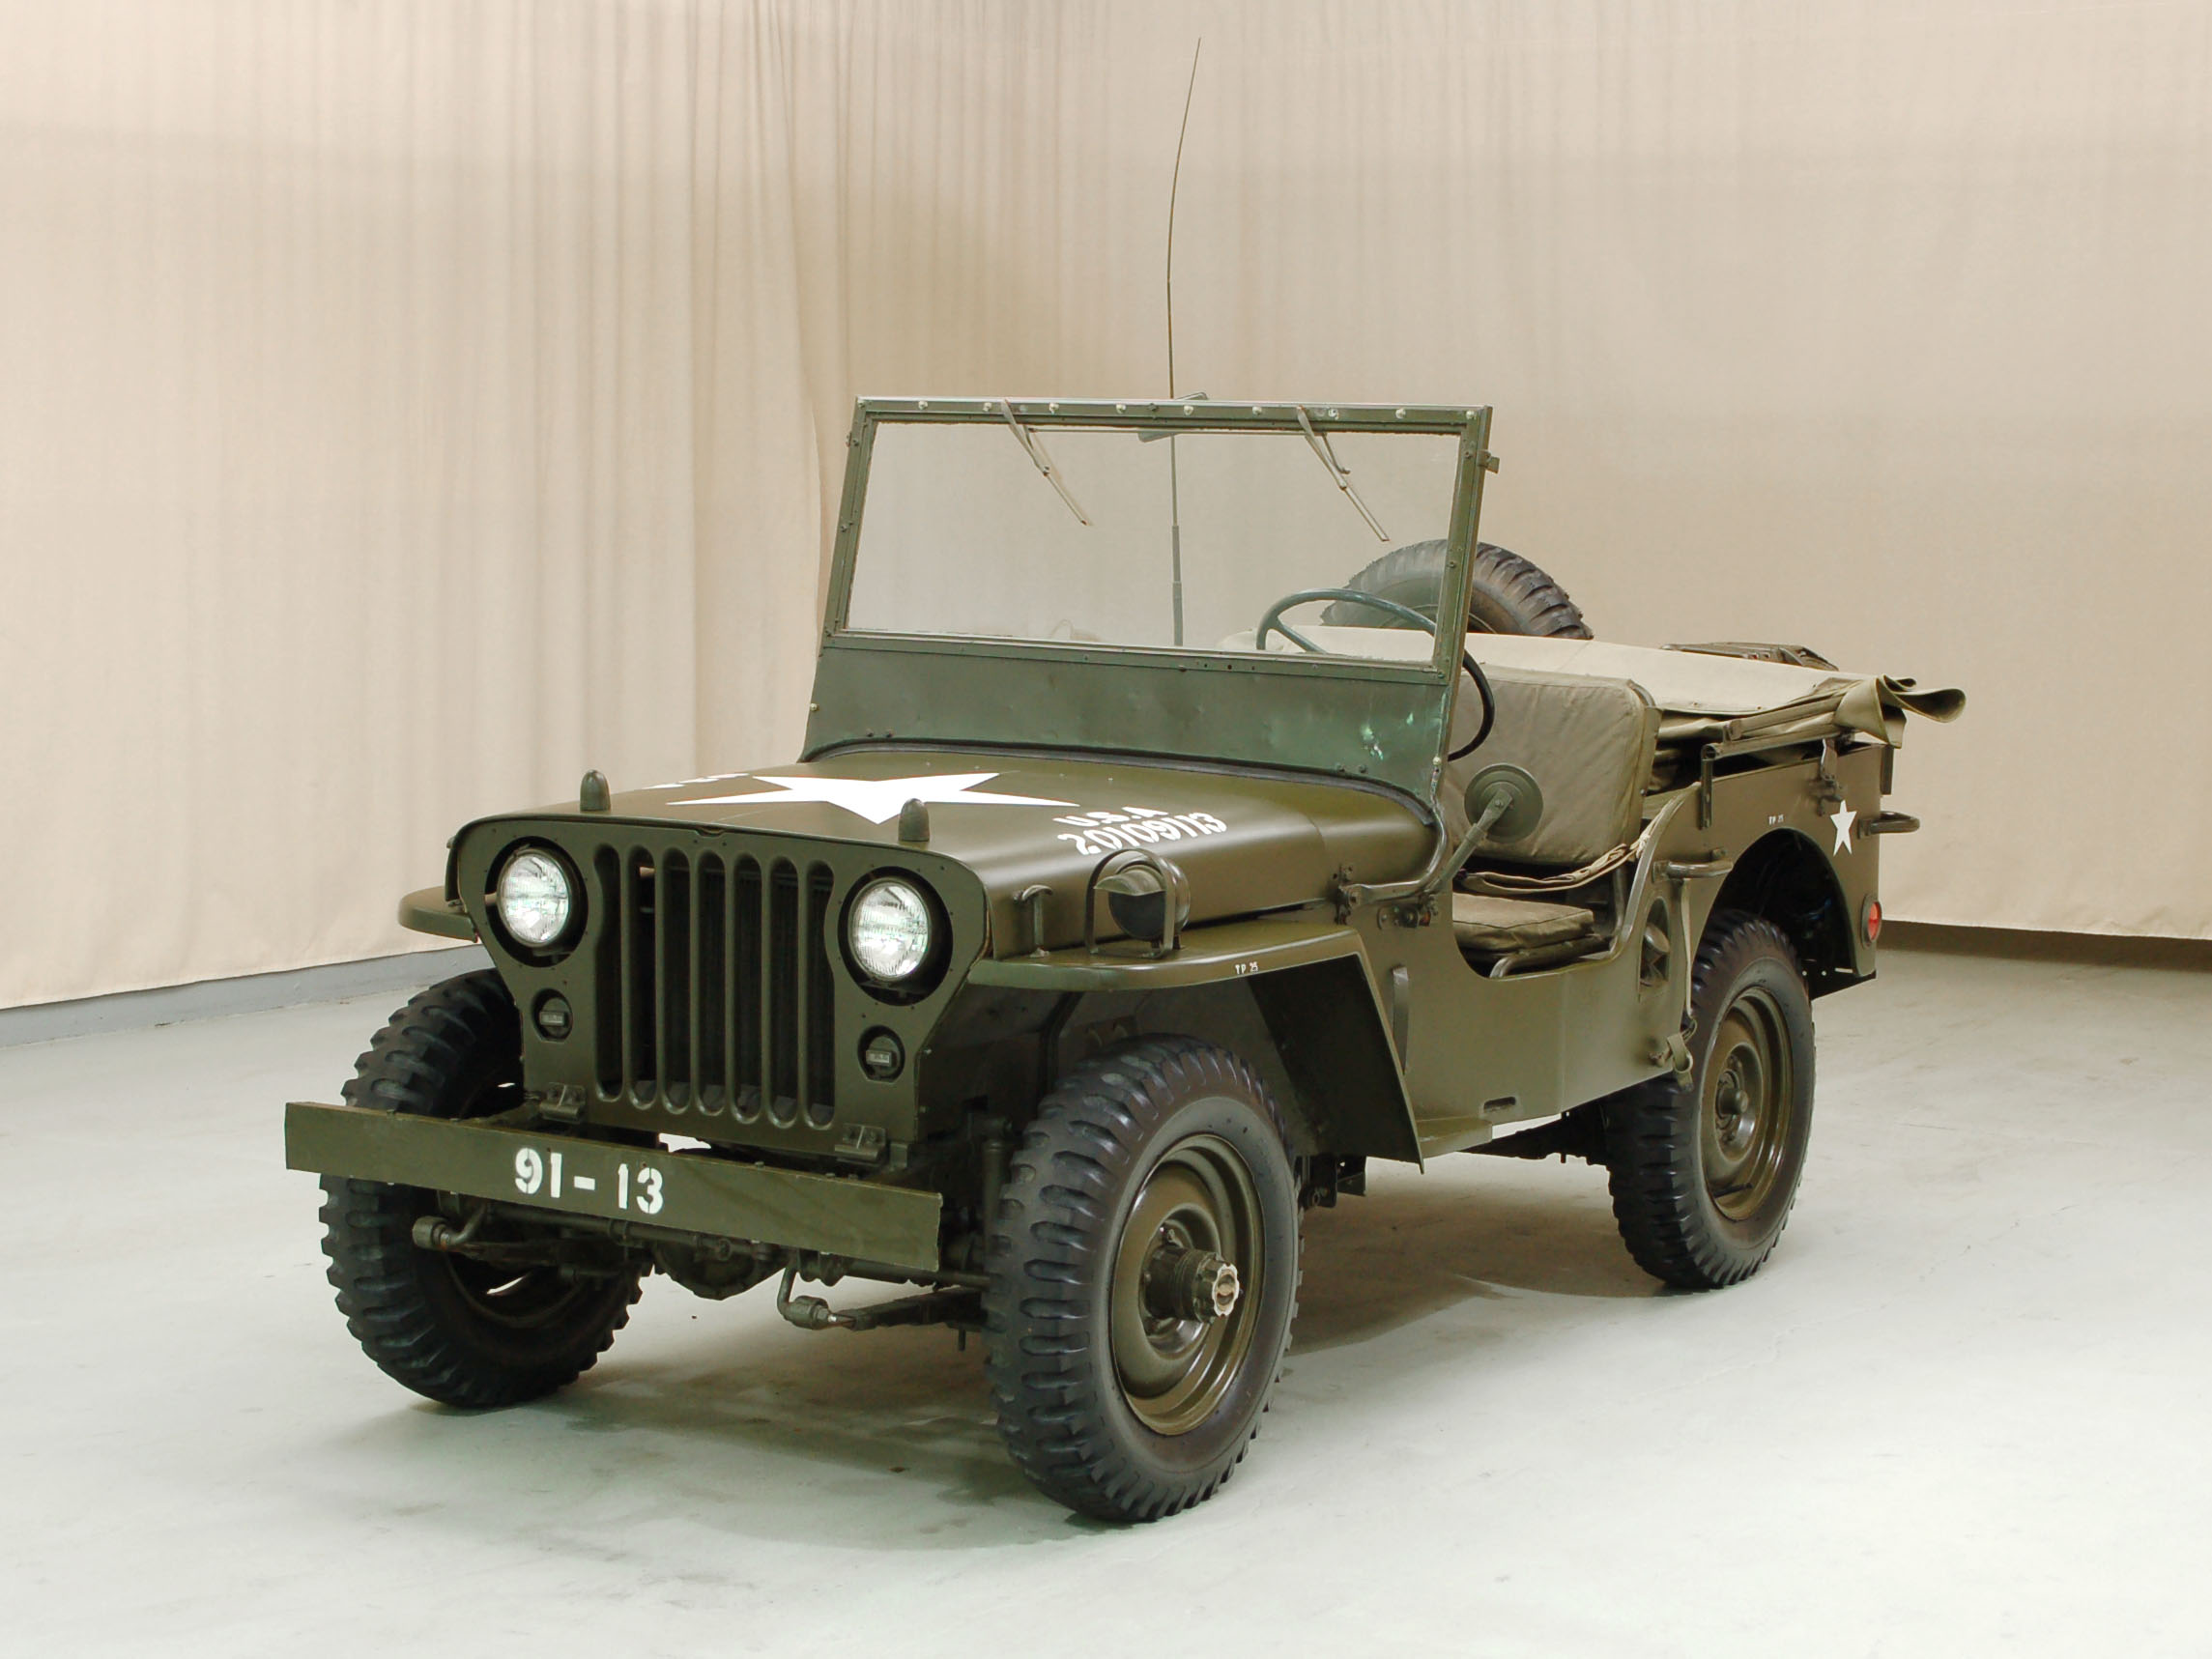 1944 ford gpw 1/4 ton